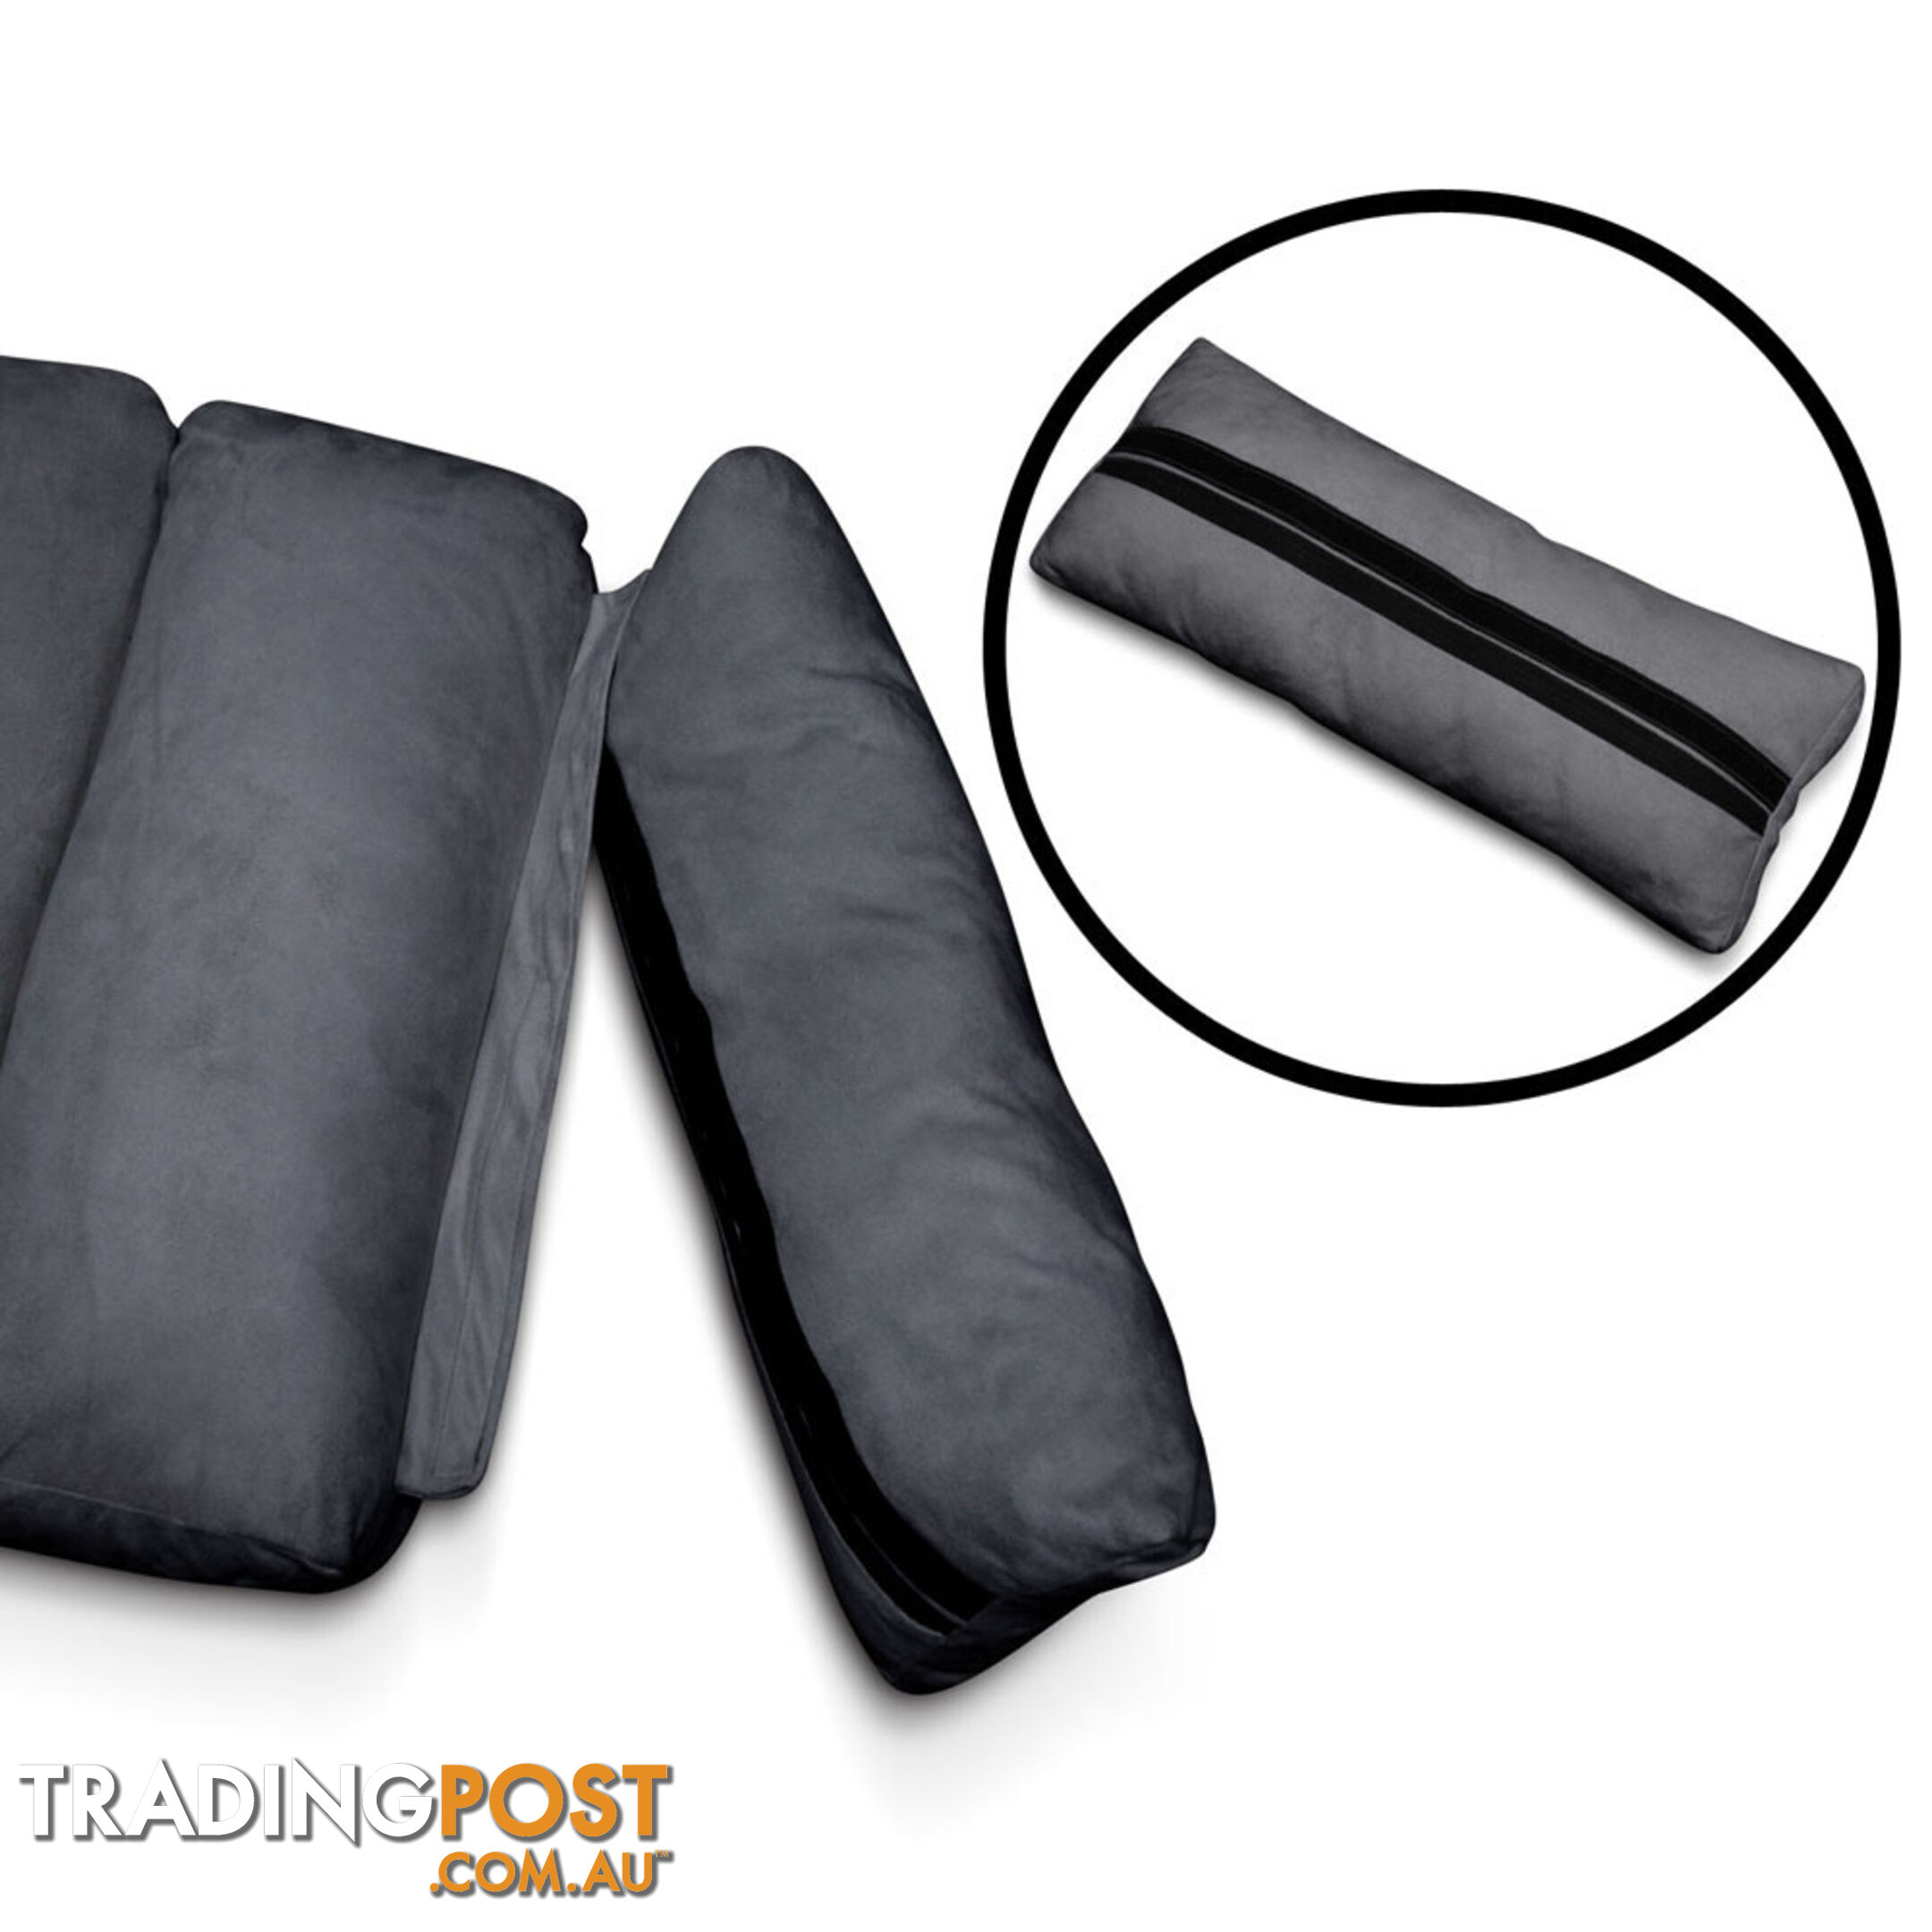 Lounge Sofa Chair - 75 Adjustable Angles  Charcoal